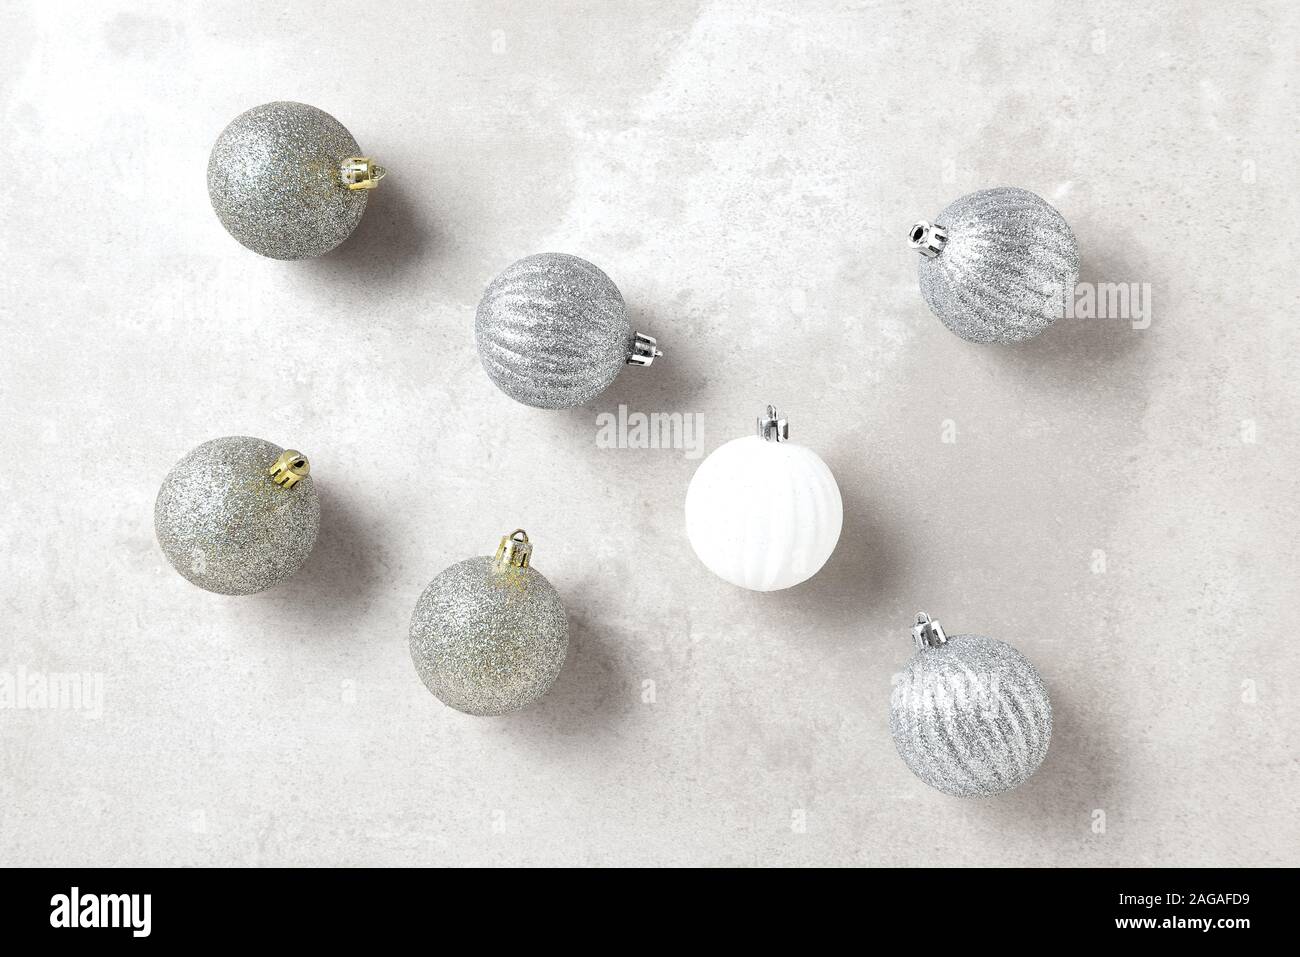 L'argent et l'or des ornements de Noël avec une seule boule blanche, format horizontal sur un gris clair table. Banque D'Images